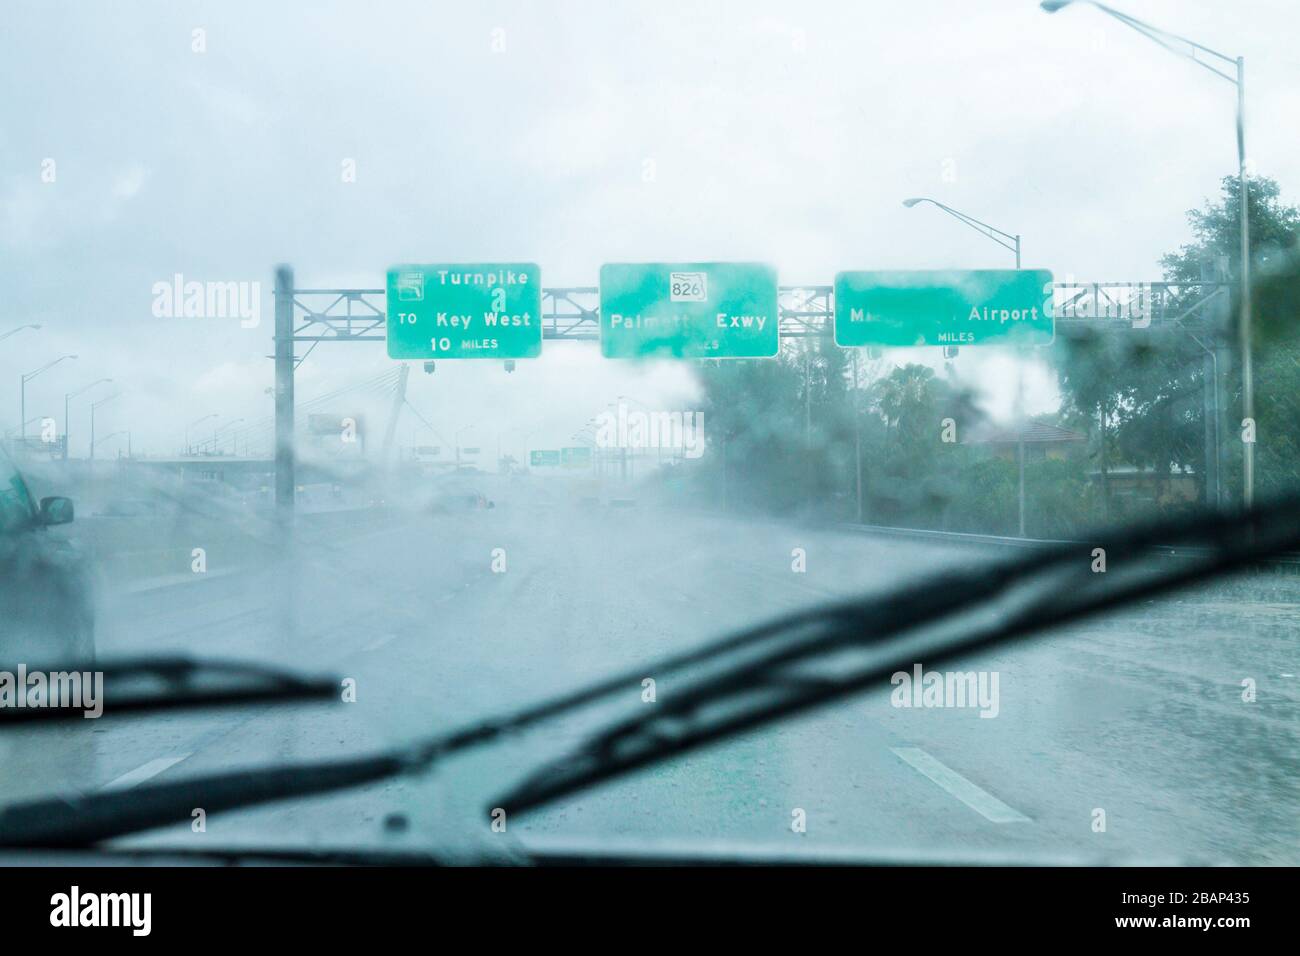 Miami Florida, Dolphin Expressway, autoroute route 826, essuie-glaces de pare-brise, pluie, pluie, conduite sûre, panneaux de signalisation routière, les visiteurs voyage tour touristique touri Banque D'Images